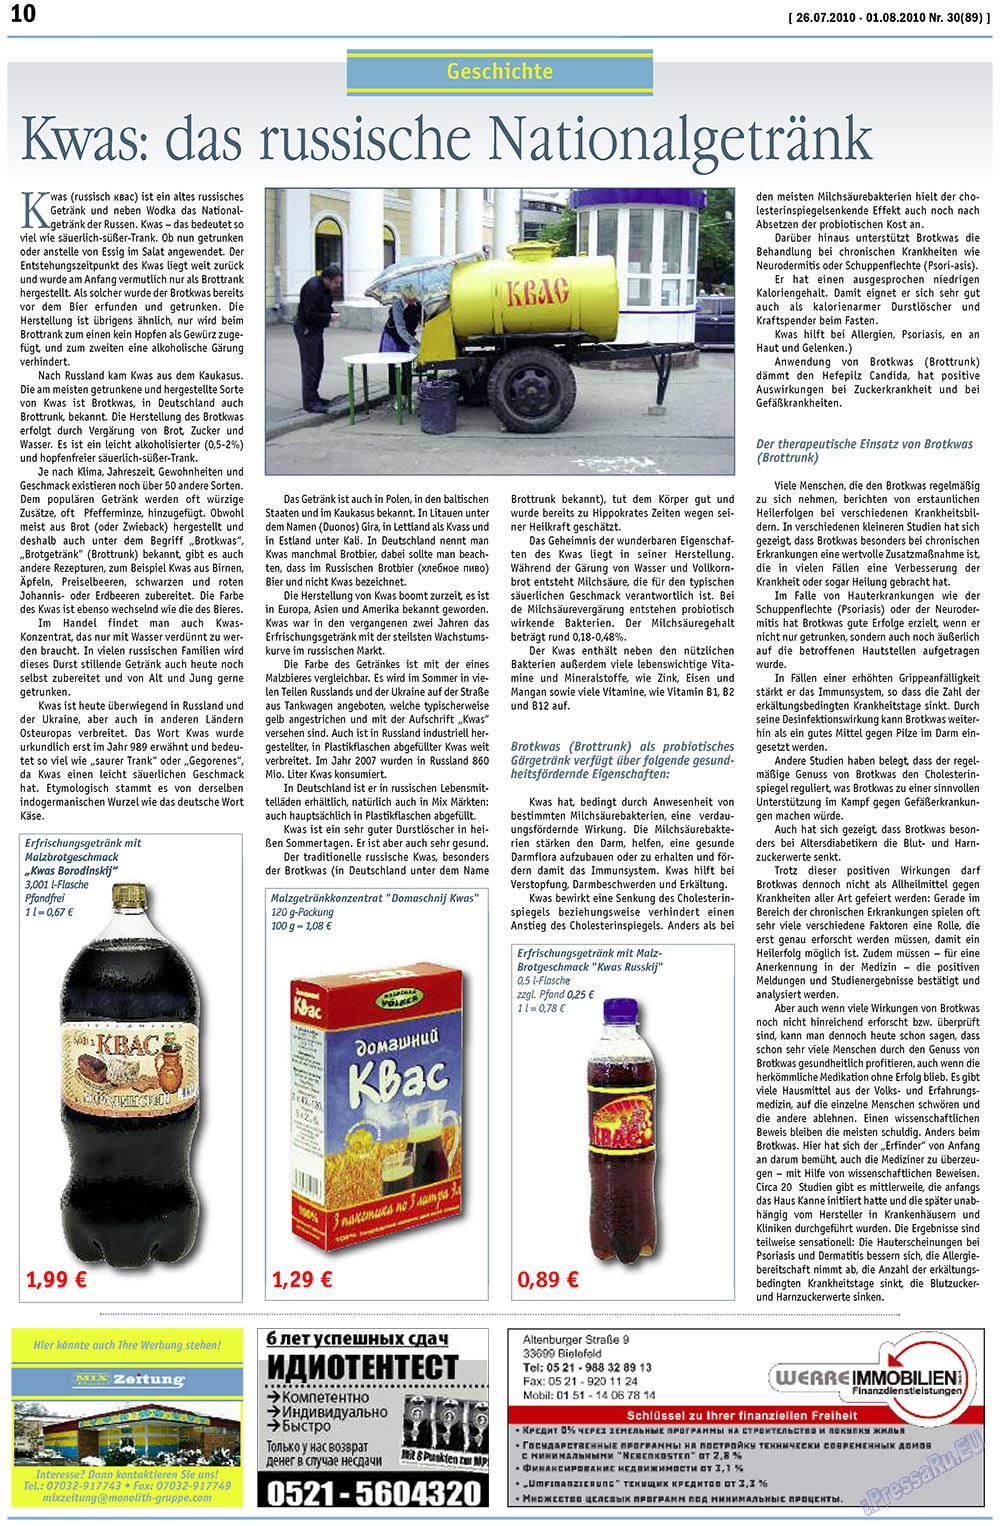 MIX-Markt Zeitung (газета). 2010 год, номер 30, стр. 10